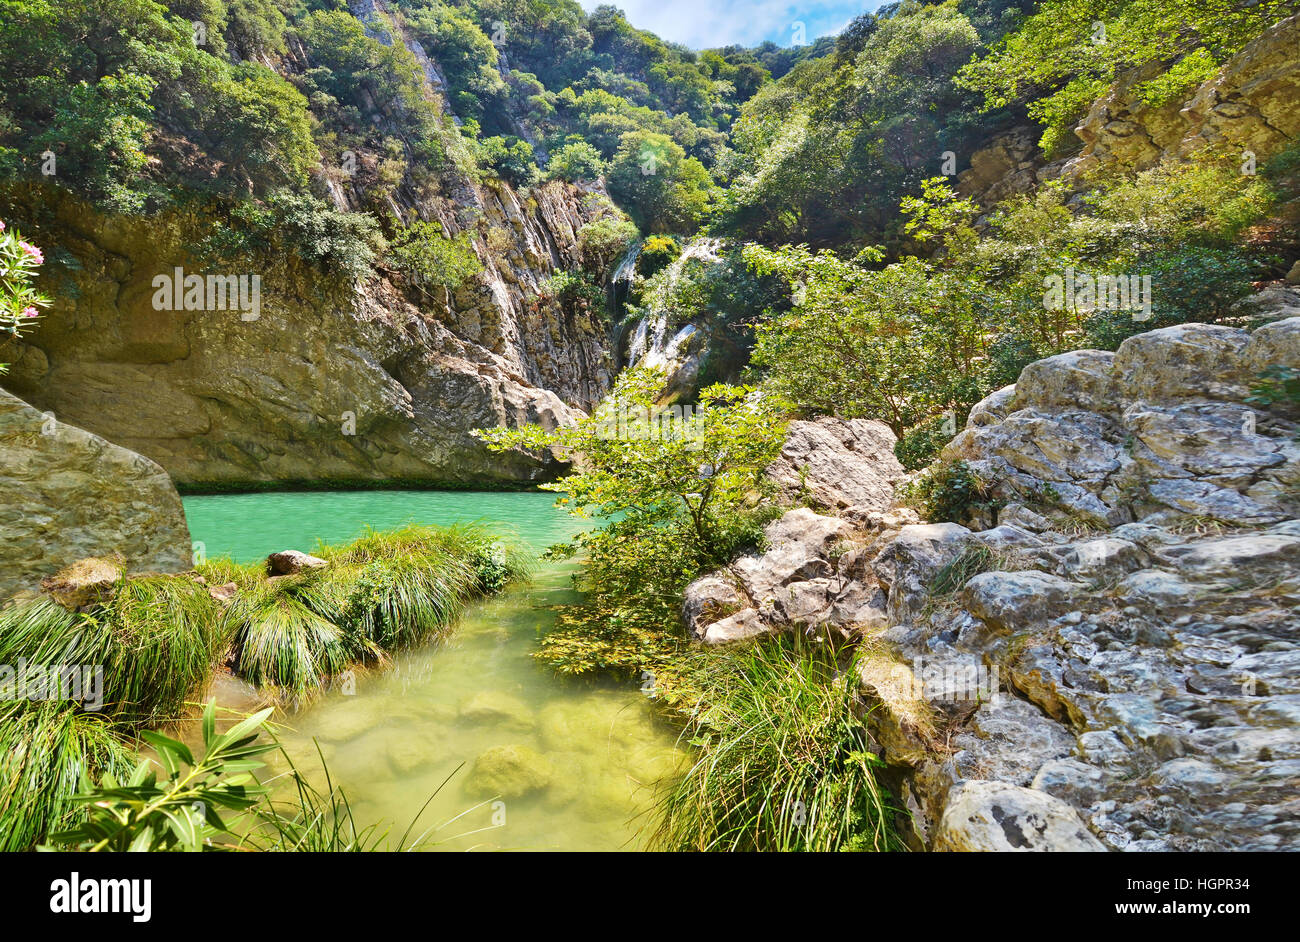 Polilimnio waterfalls at Messinia Peloponnese Greece Stock Photo